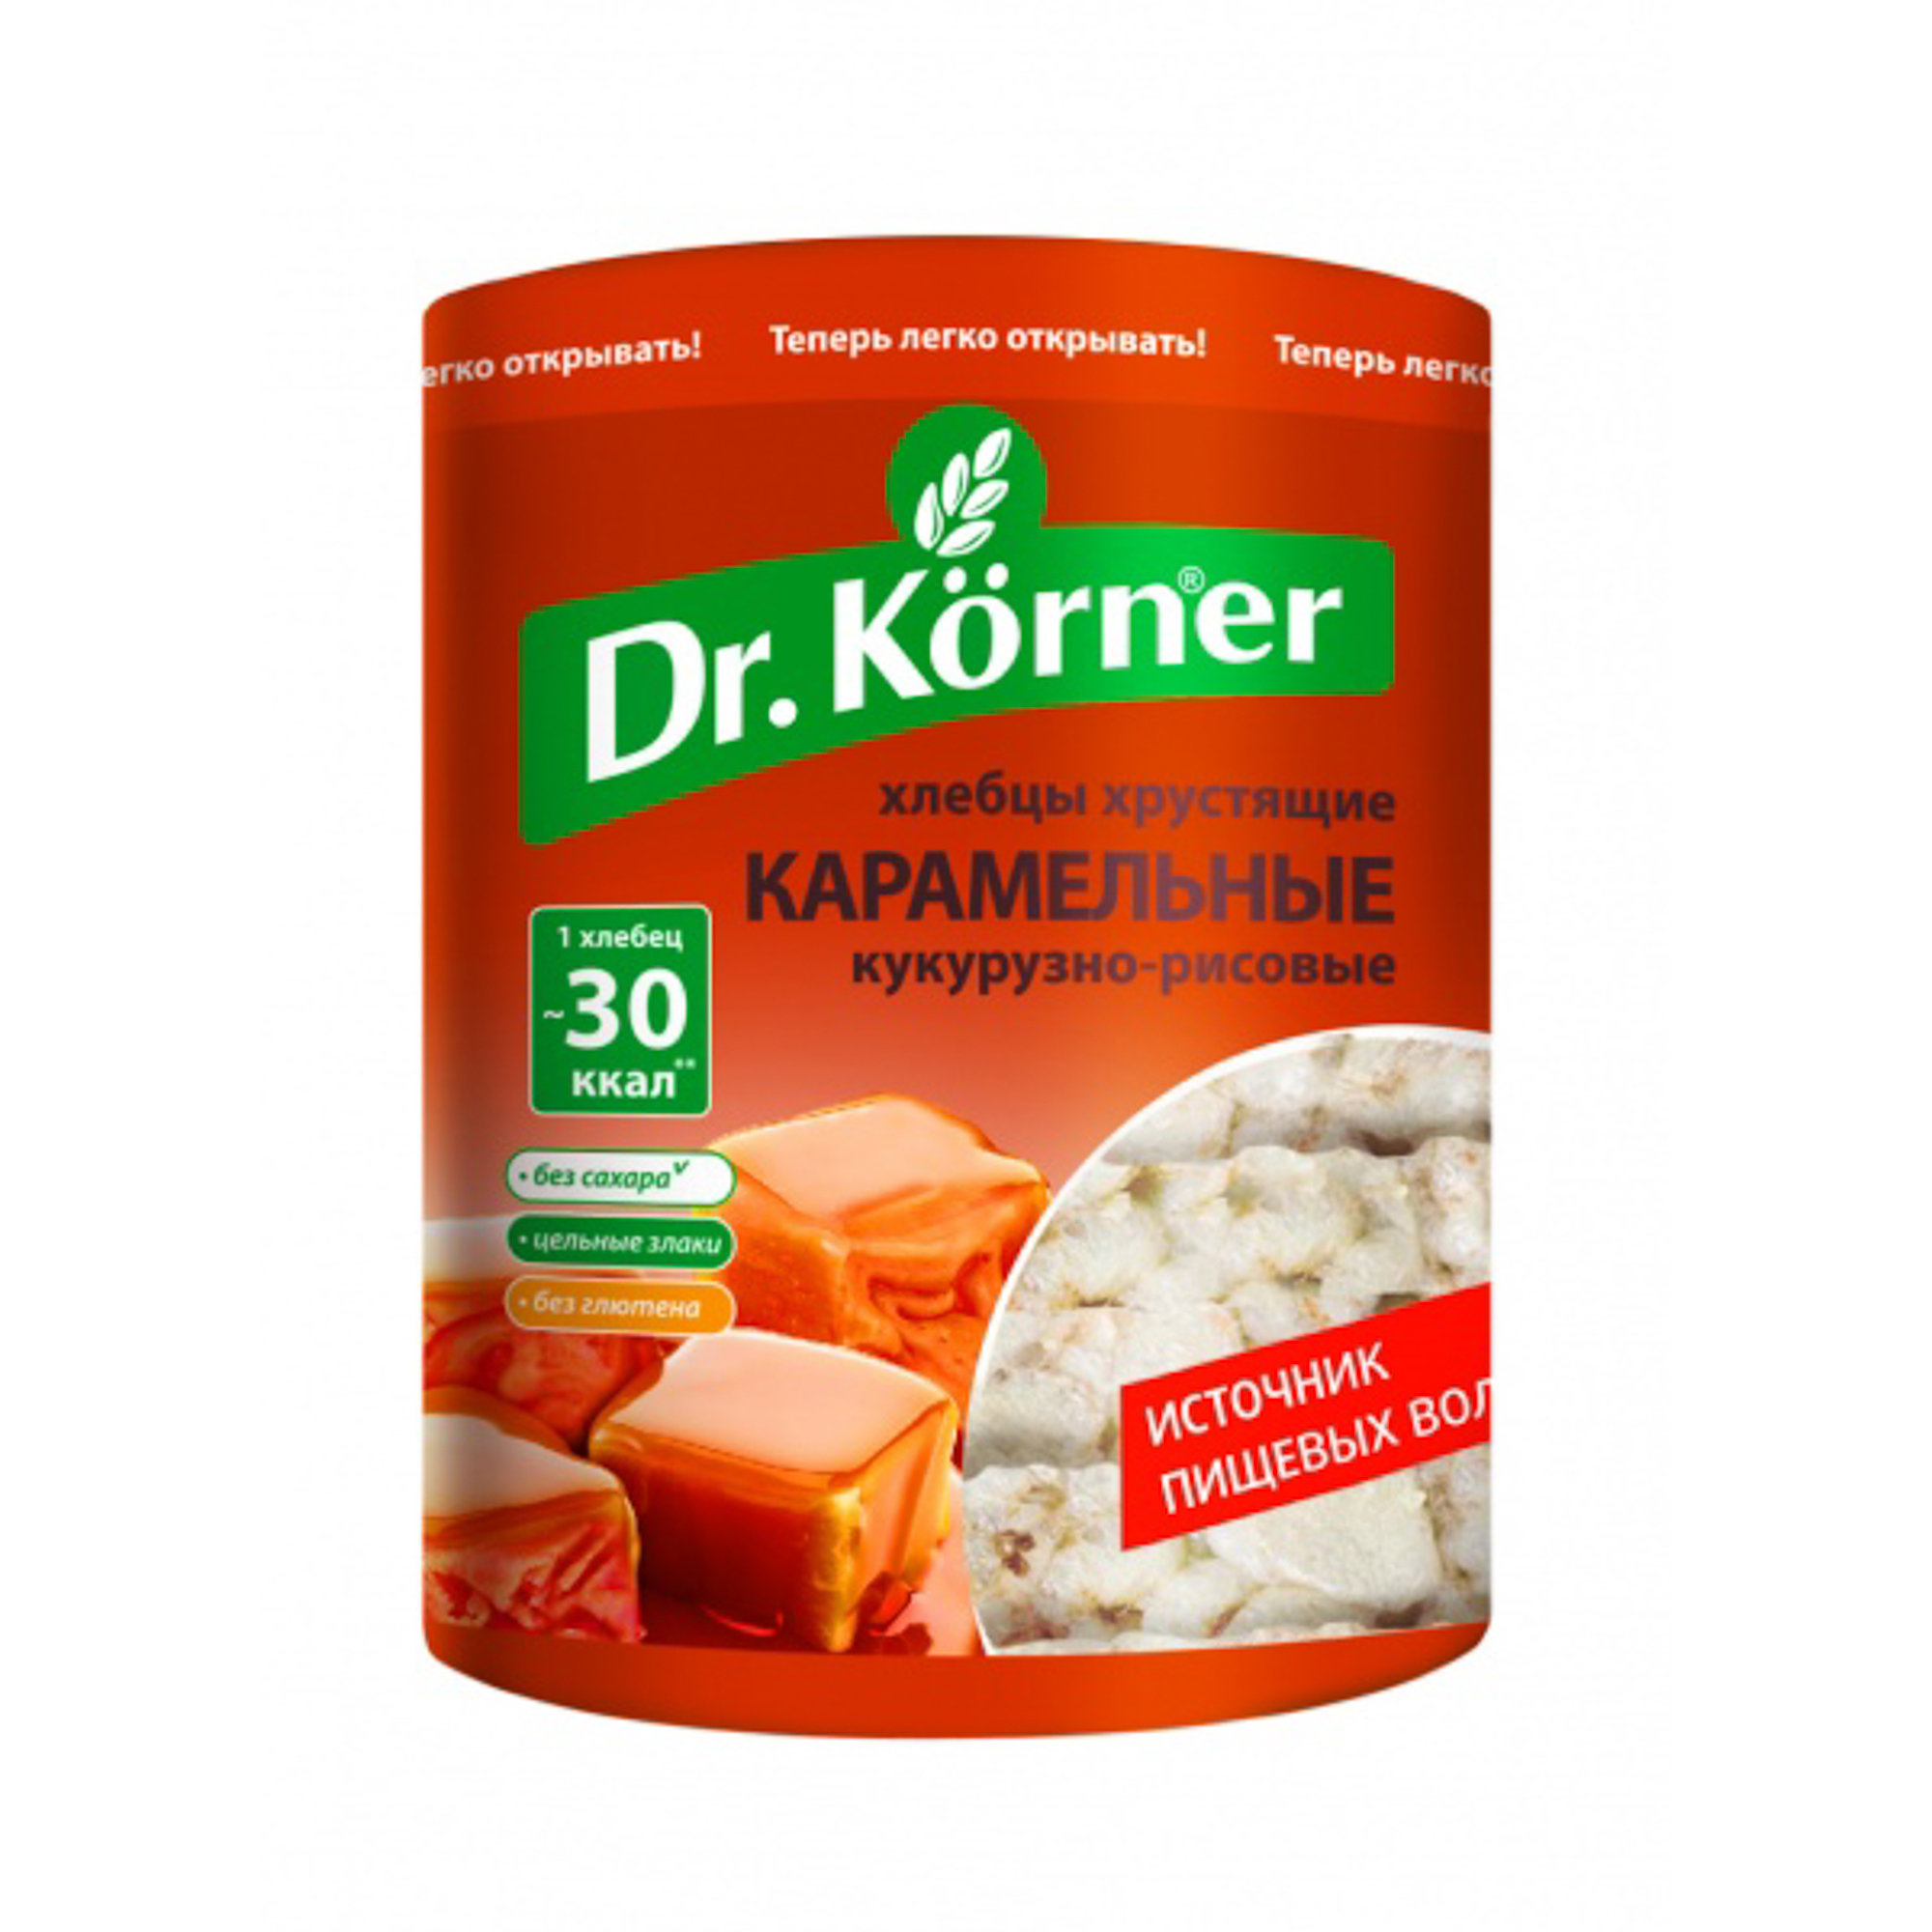 Хлебцы Dr.Korner хрустящие кукурузно-рисовые карамельные 90 г хлебцы ржаные цельнозерновые wasa 275 гр